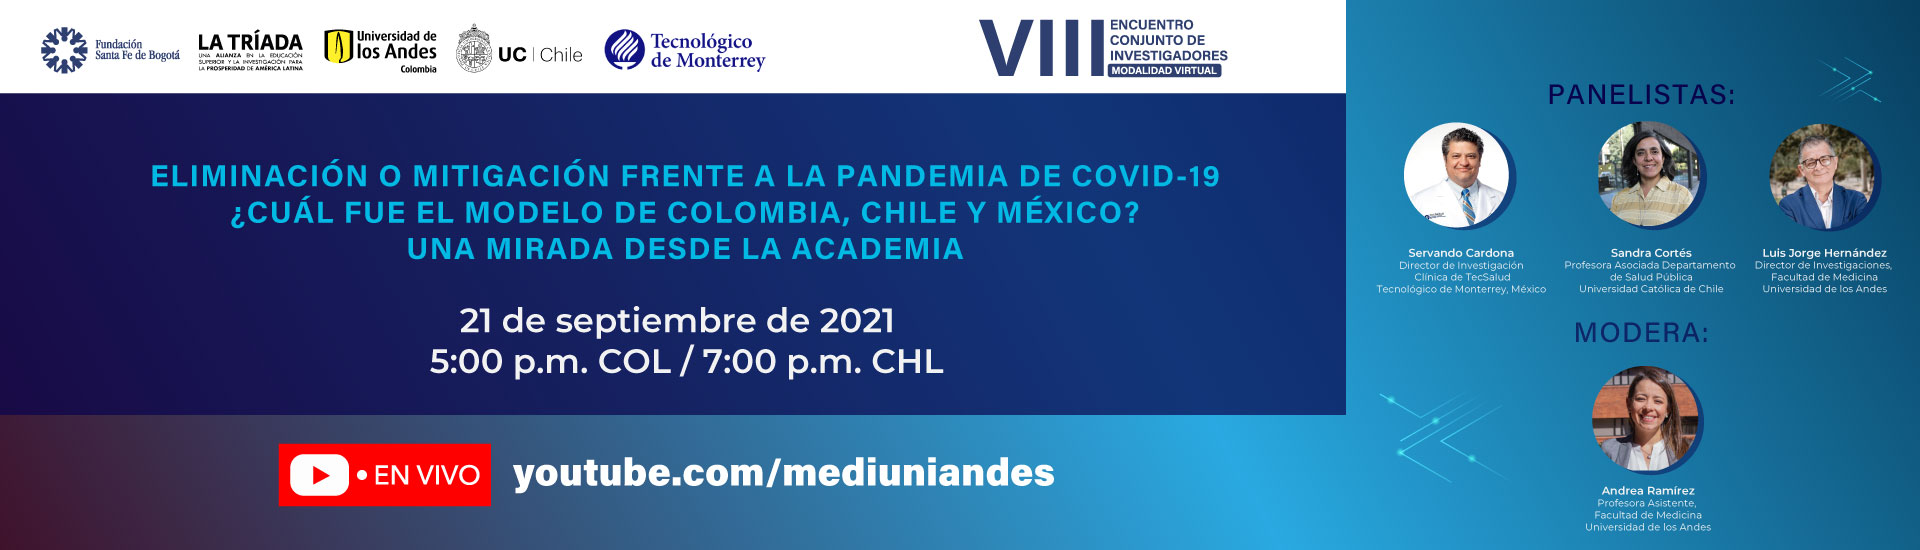 Eliminación o mitigación frente a la pandemia de COVID-19 ¿cuál fue el modelo de Colombia, Chile y México? una mirada desde la academia.